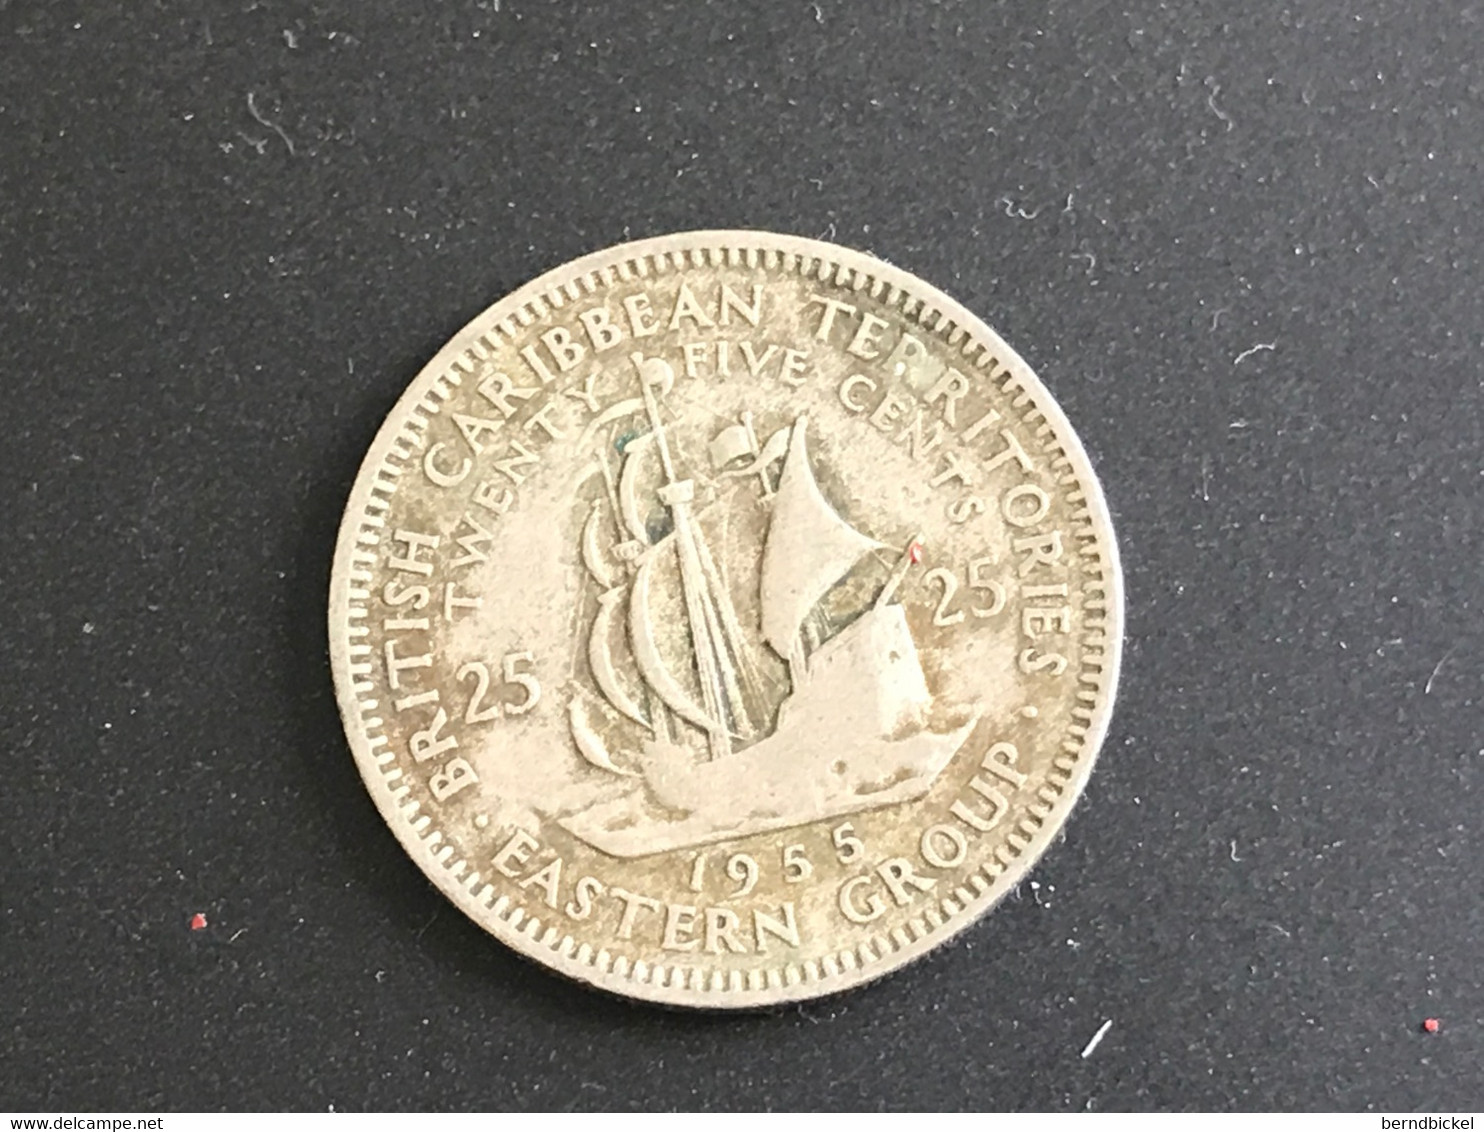 Münze Münzen Umlaufmünze Ostkaribische Territorien 25 Cents 1955 - Caraibi Britannici (Territori)